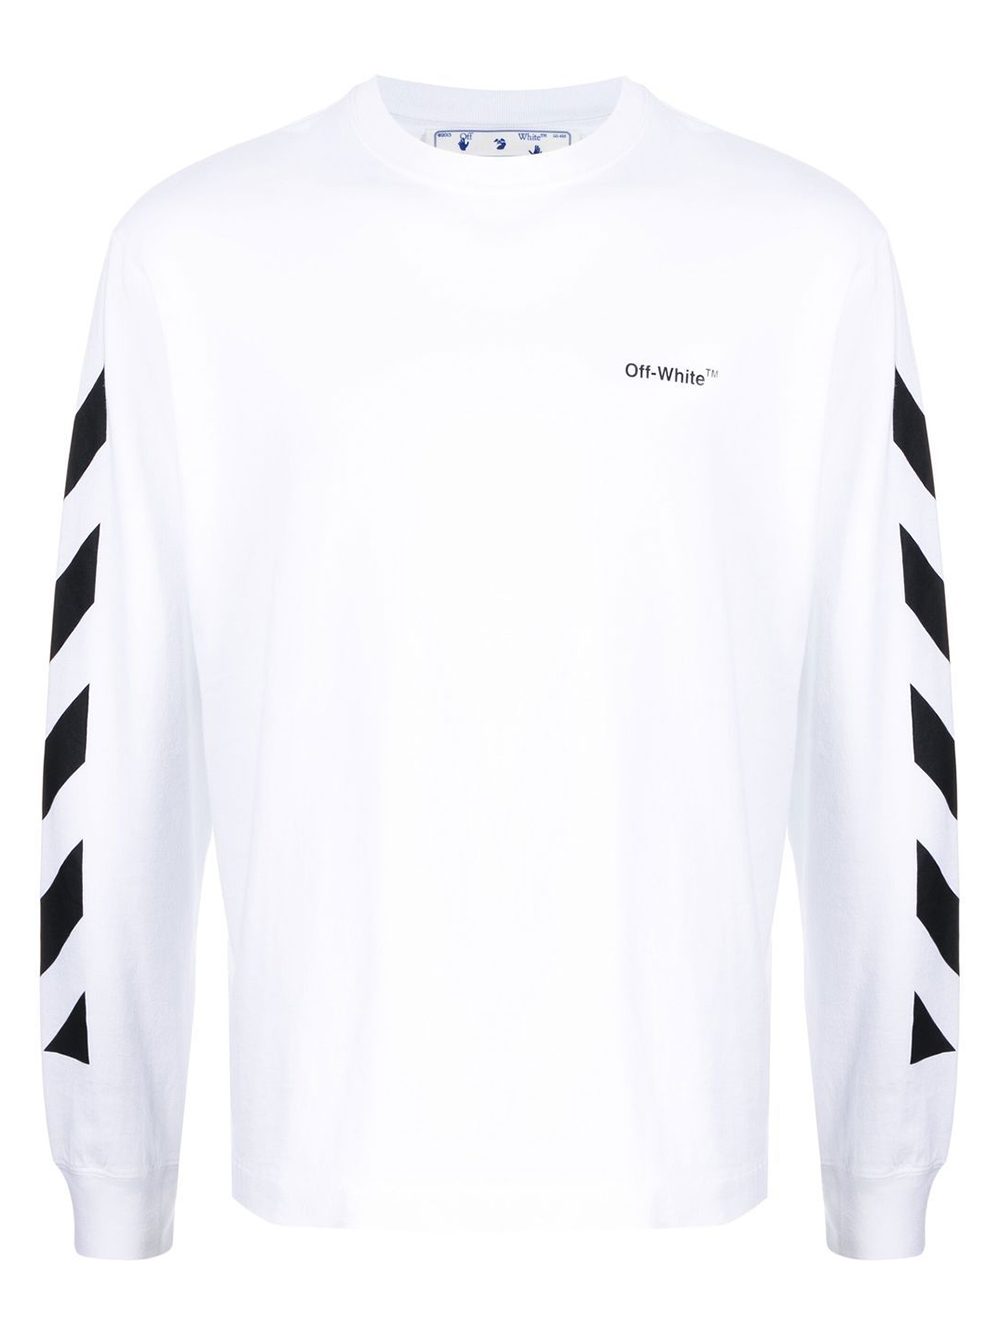 OFF-WHITE Diagonal Helvetica Long Sleeve T-Shirt White/Black Men's ...